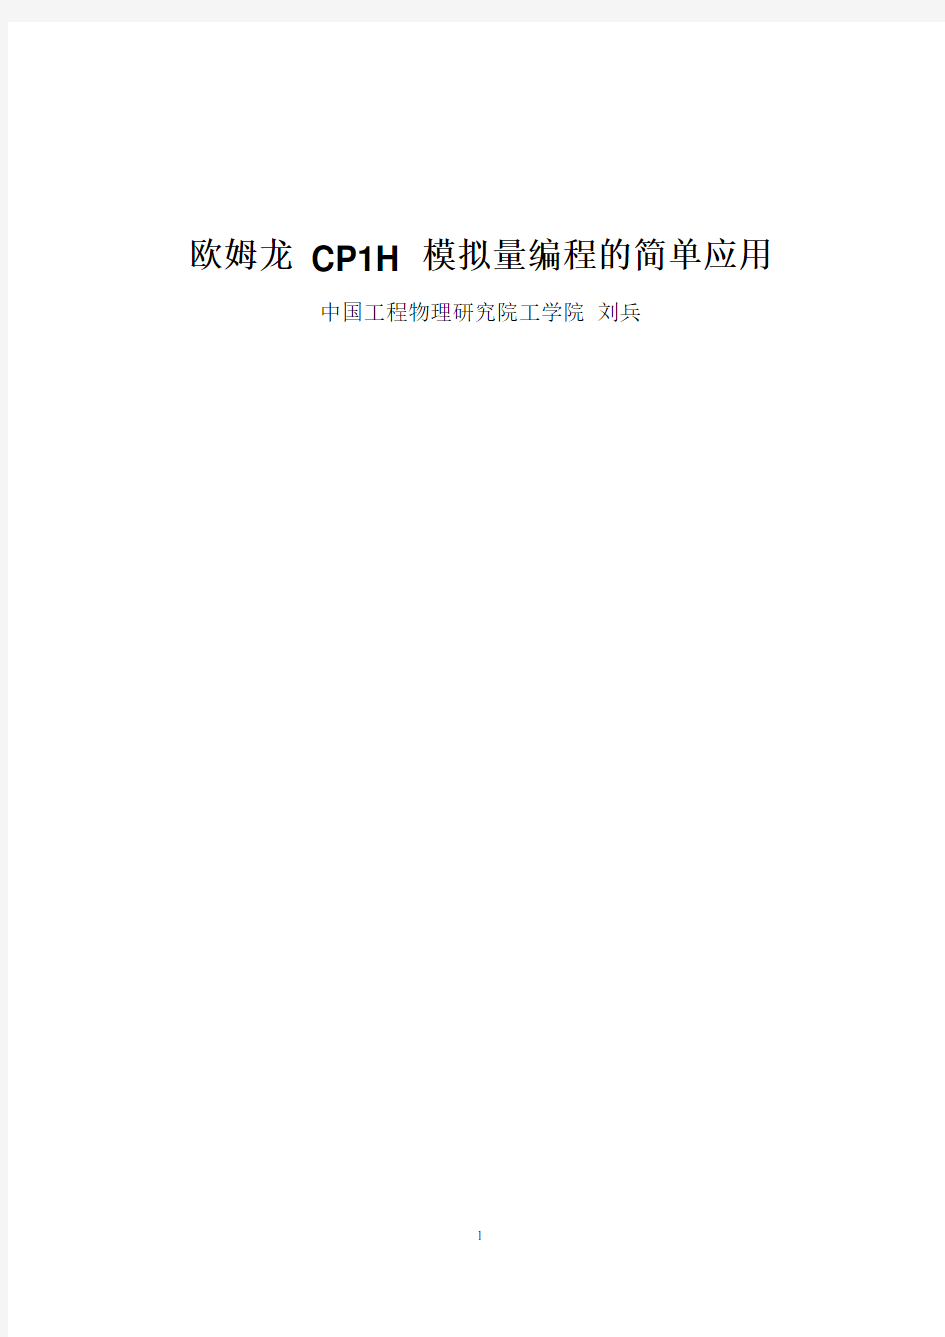 欧姆龙 CP1H 模拟量编程的简单应用